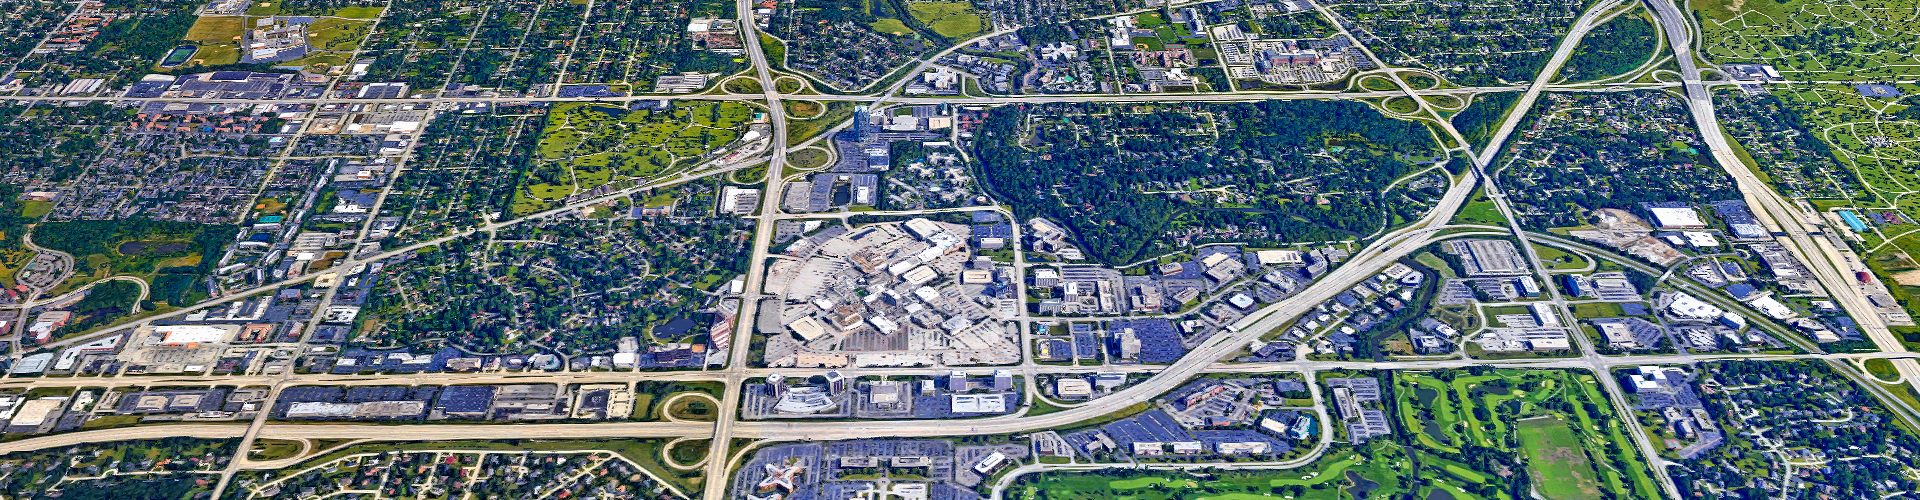 aerial view of roads in Oak Brook, IL